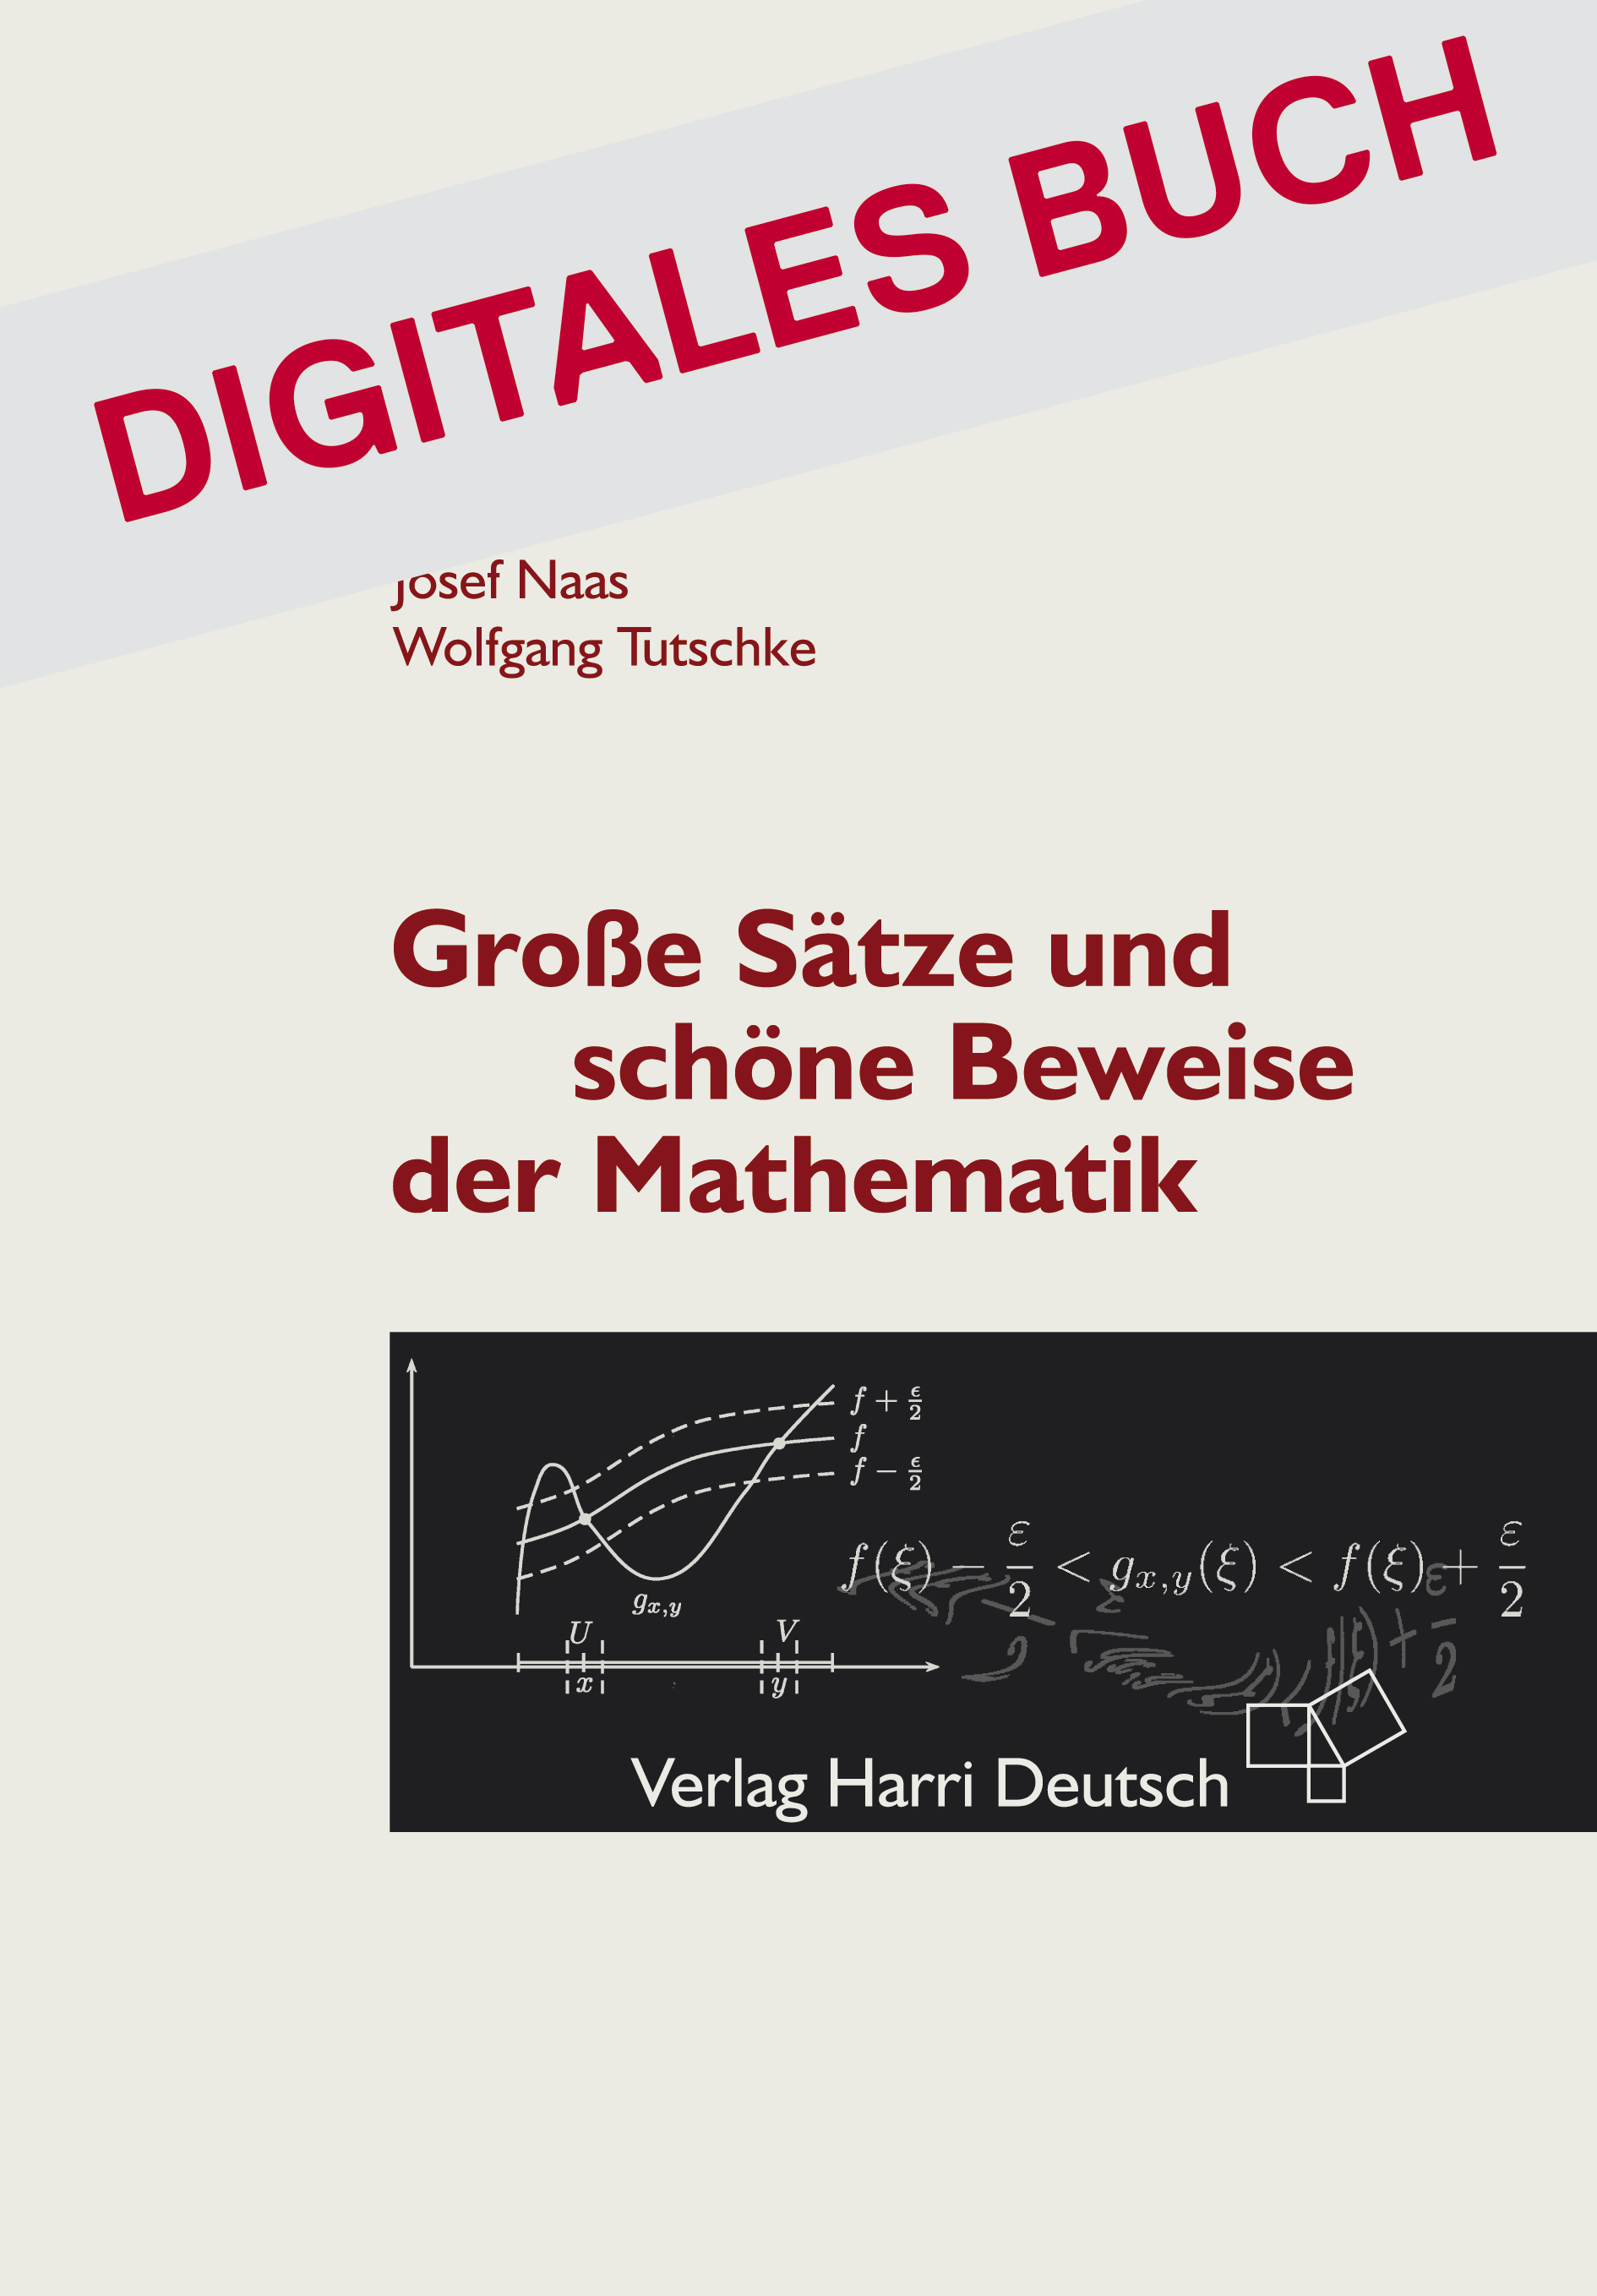 Große Sätze und schöne Beweise der Mathematik - Digitales Buch